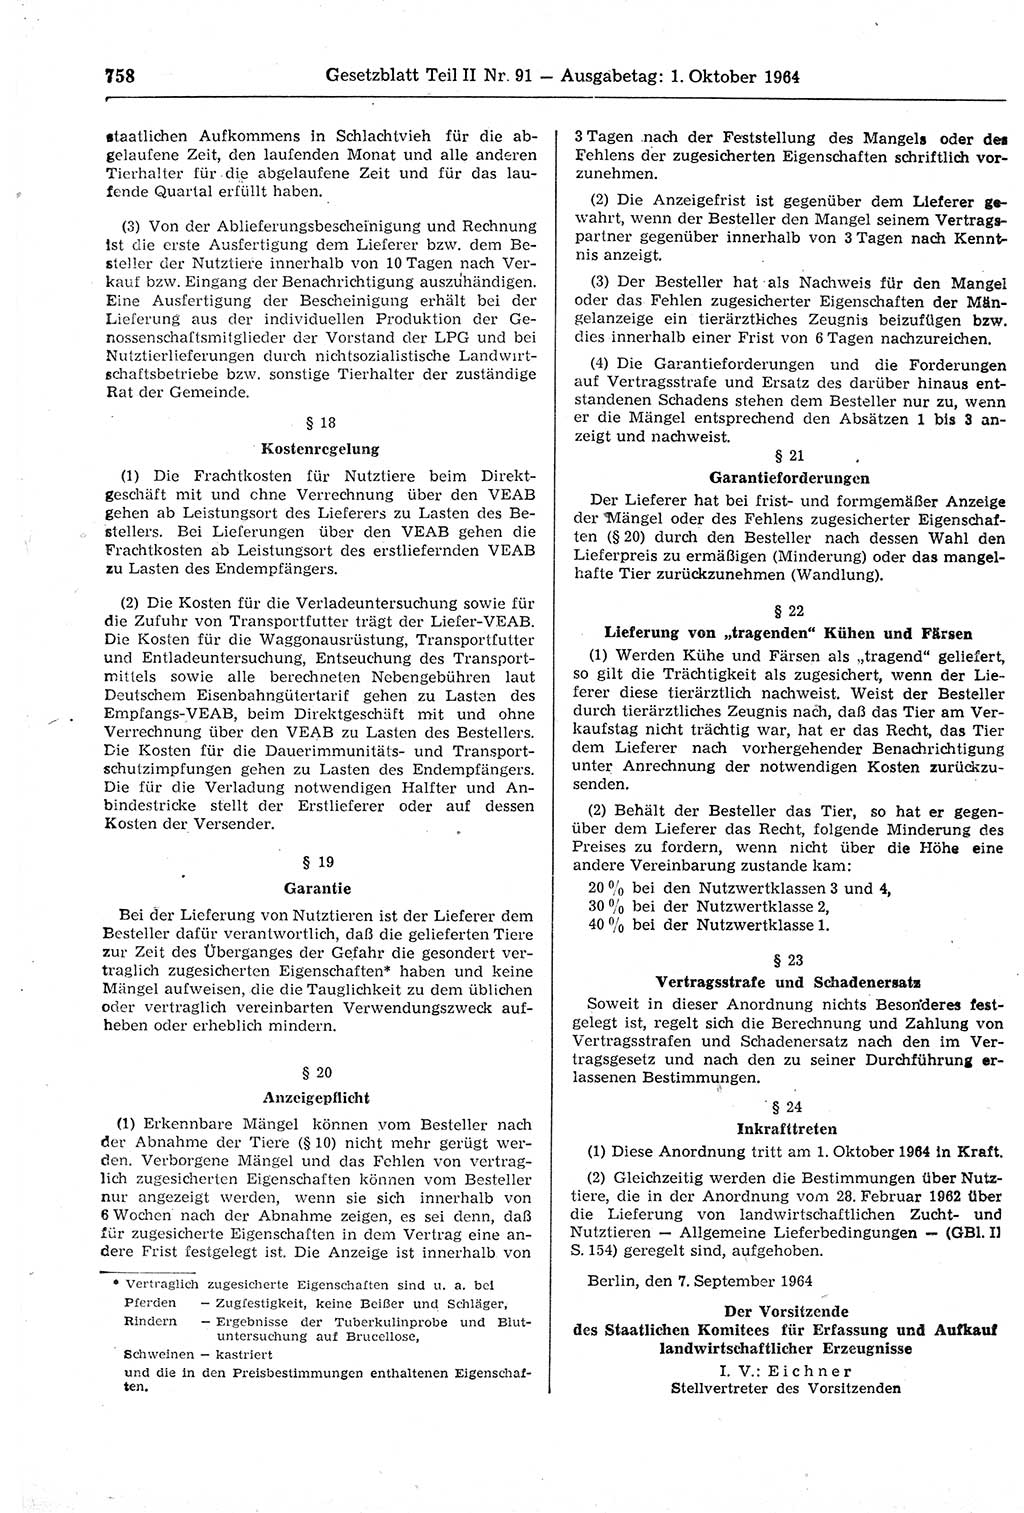 Gesetzblatt (GBl.) der Deutschen Demokratischen Republik (DDR) Teil ⅠⅠ 1964, Seite 758 (GBl. DDR ⅠⅠ 1964, S. 758)